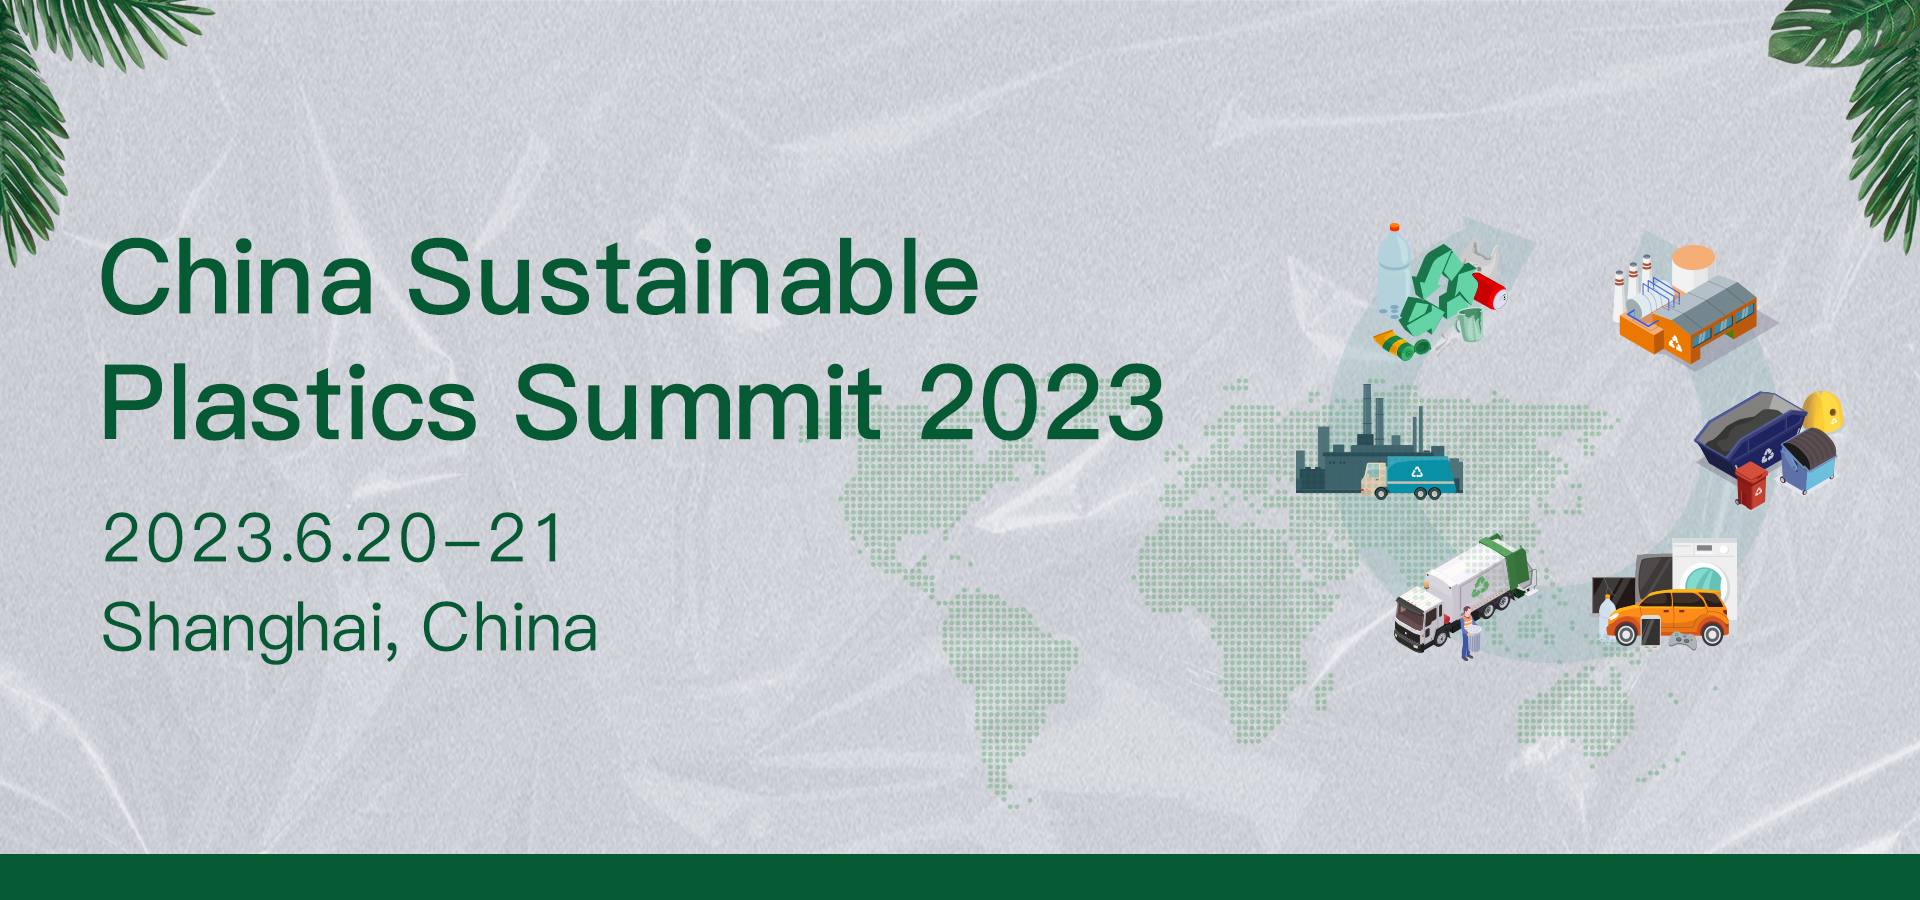 China Sustainable Plastics Summit 2023, Shanghai,China,Shanghai,China